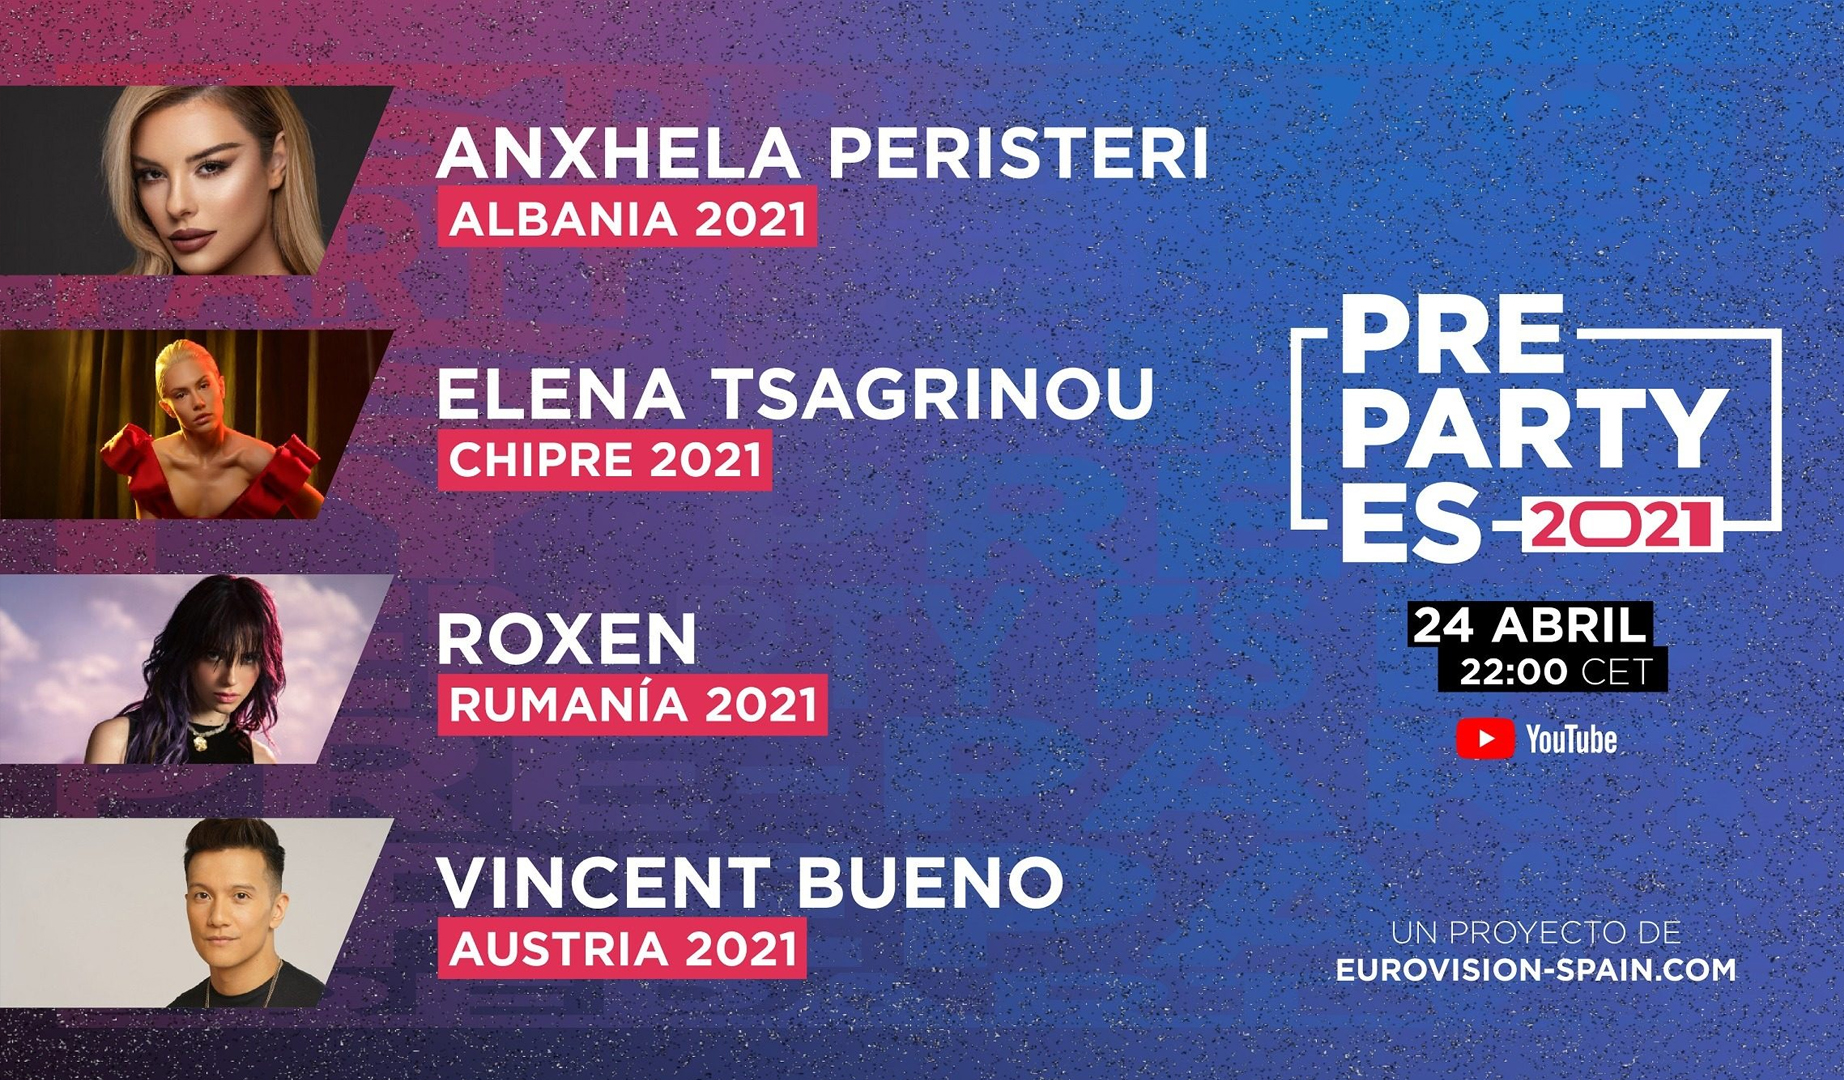 Anxhela Peristeri, Elena Tsagrinou, Roxen y Vincent Bueno estarán en la PrePartyES 2021